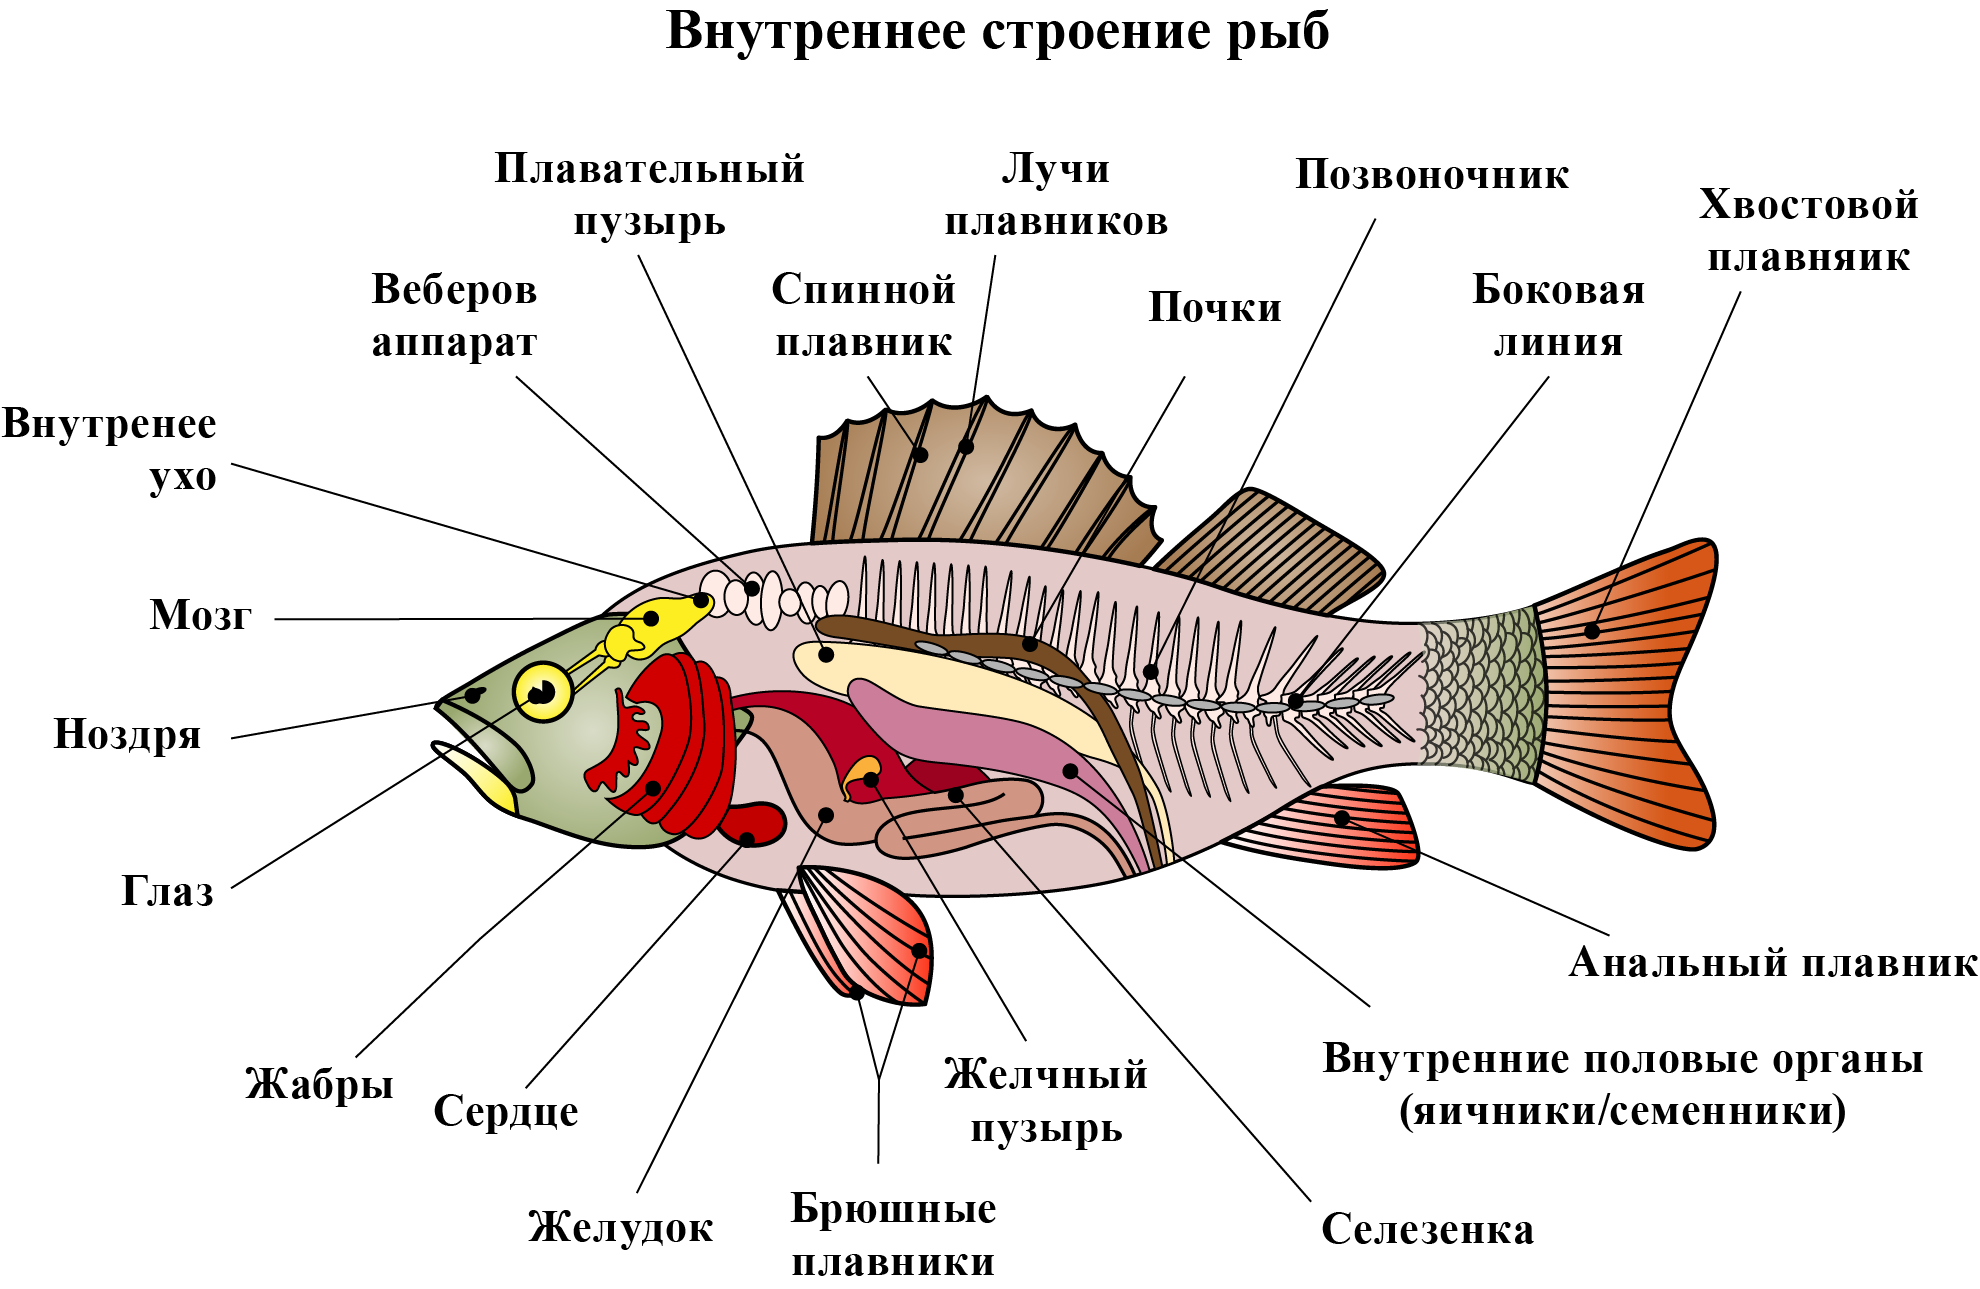 Тест по теме рыбы биология 7 класс. Внутреннее строение рыбы 7 класс пищеварительная система. Внутреннее строение рыбы схема. Внутреннее строение рыб 7 класс скелет. Внутреннее строение костистой рыбы схема.